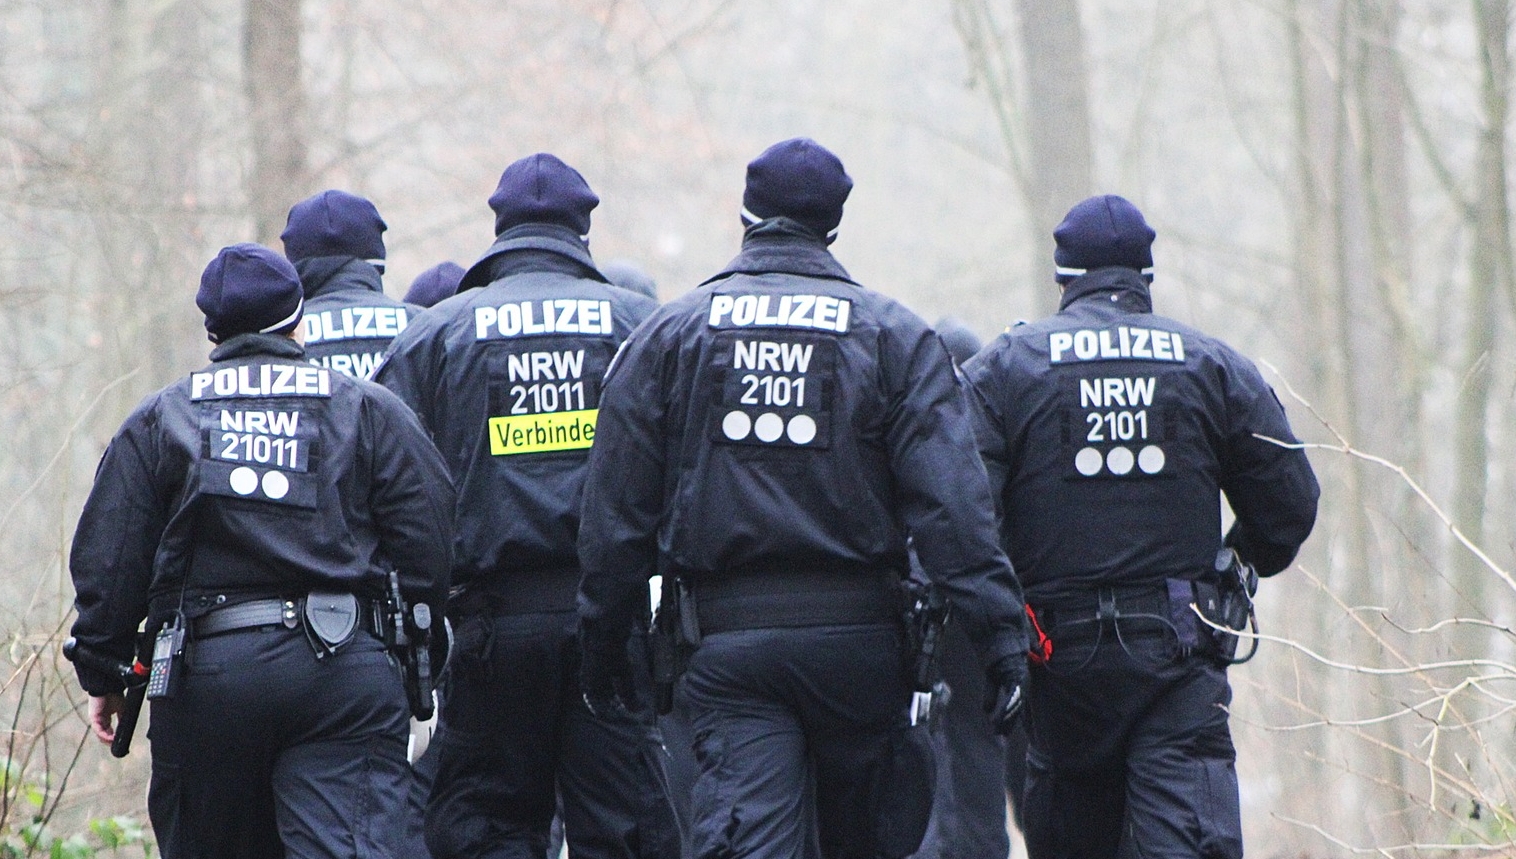 44 de arestări într-una dintre cele mai periculoase reţele criminale din UE / Pixabay